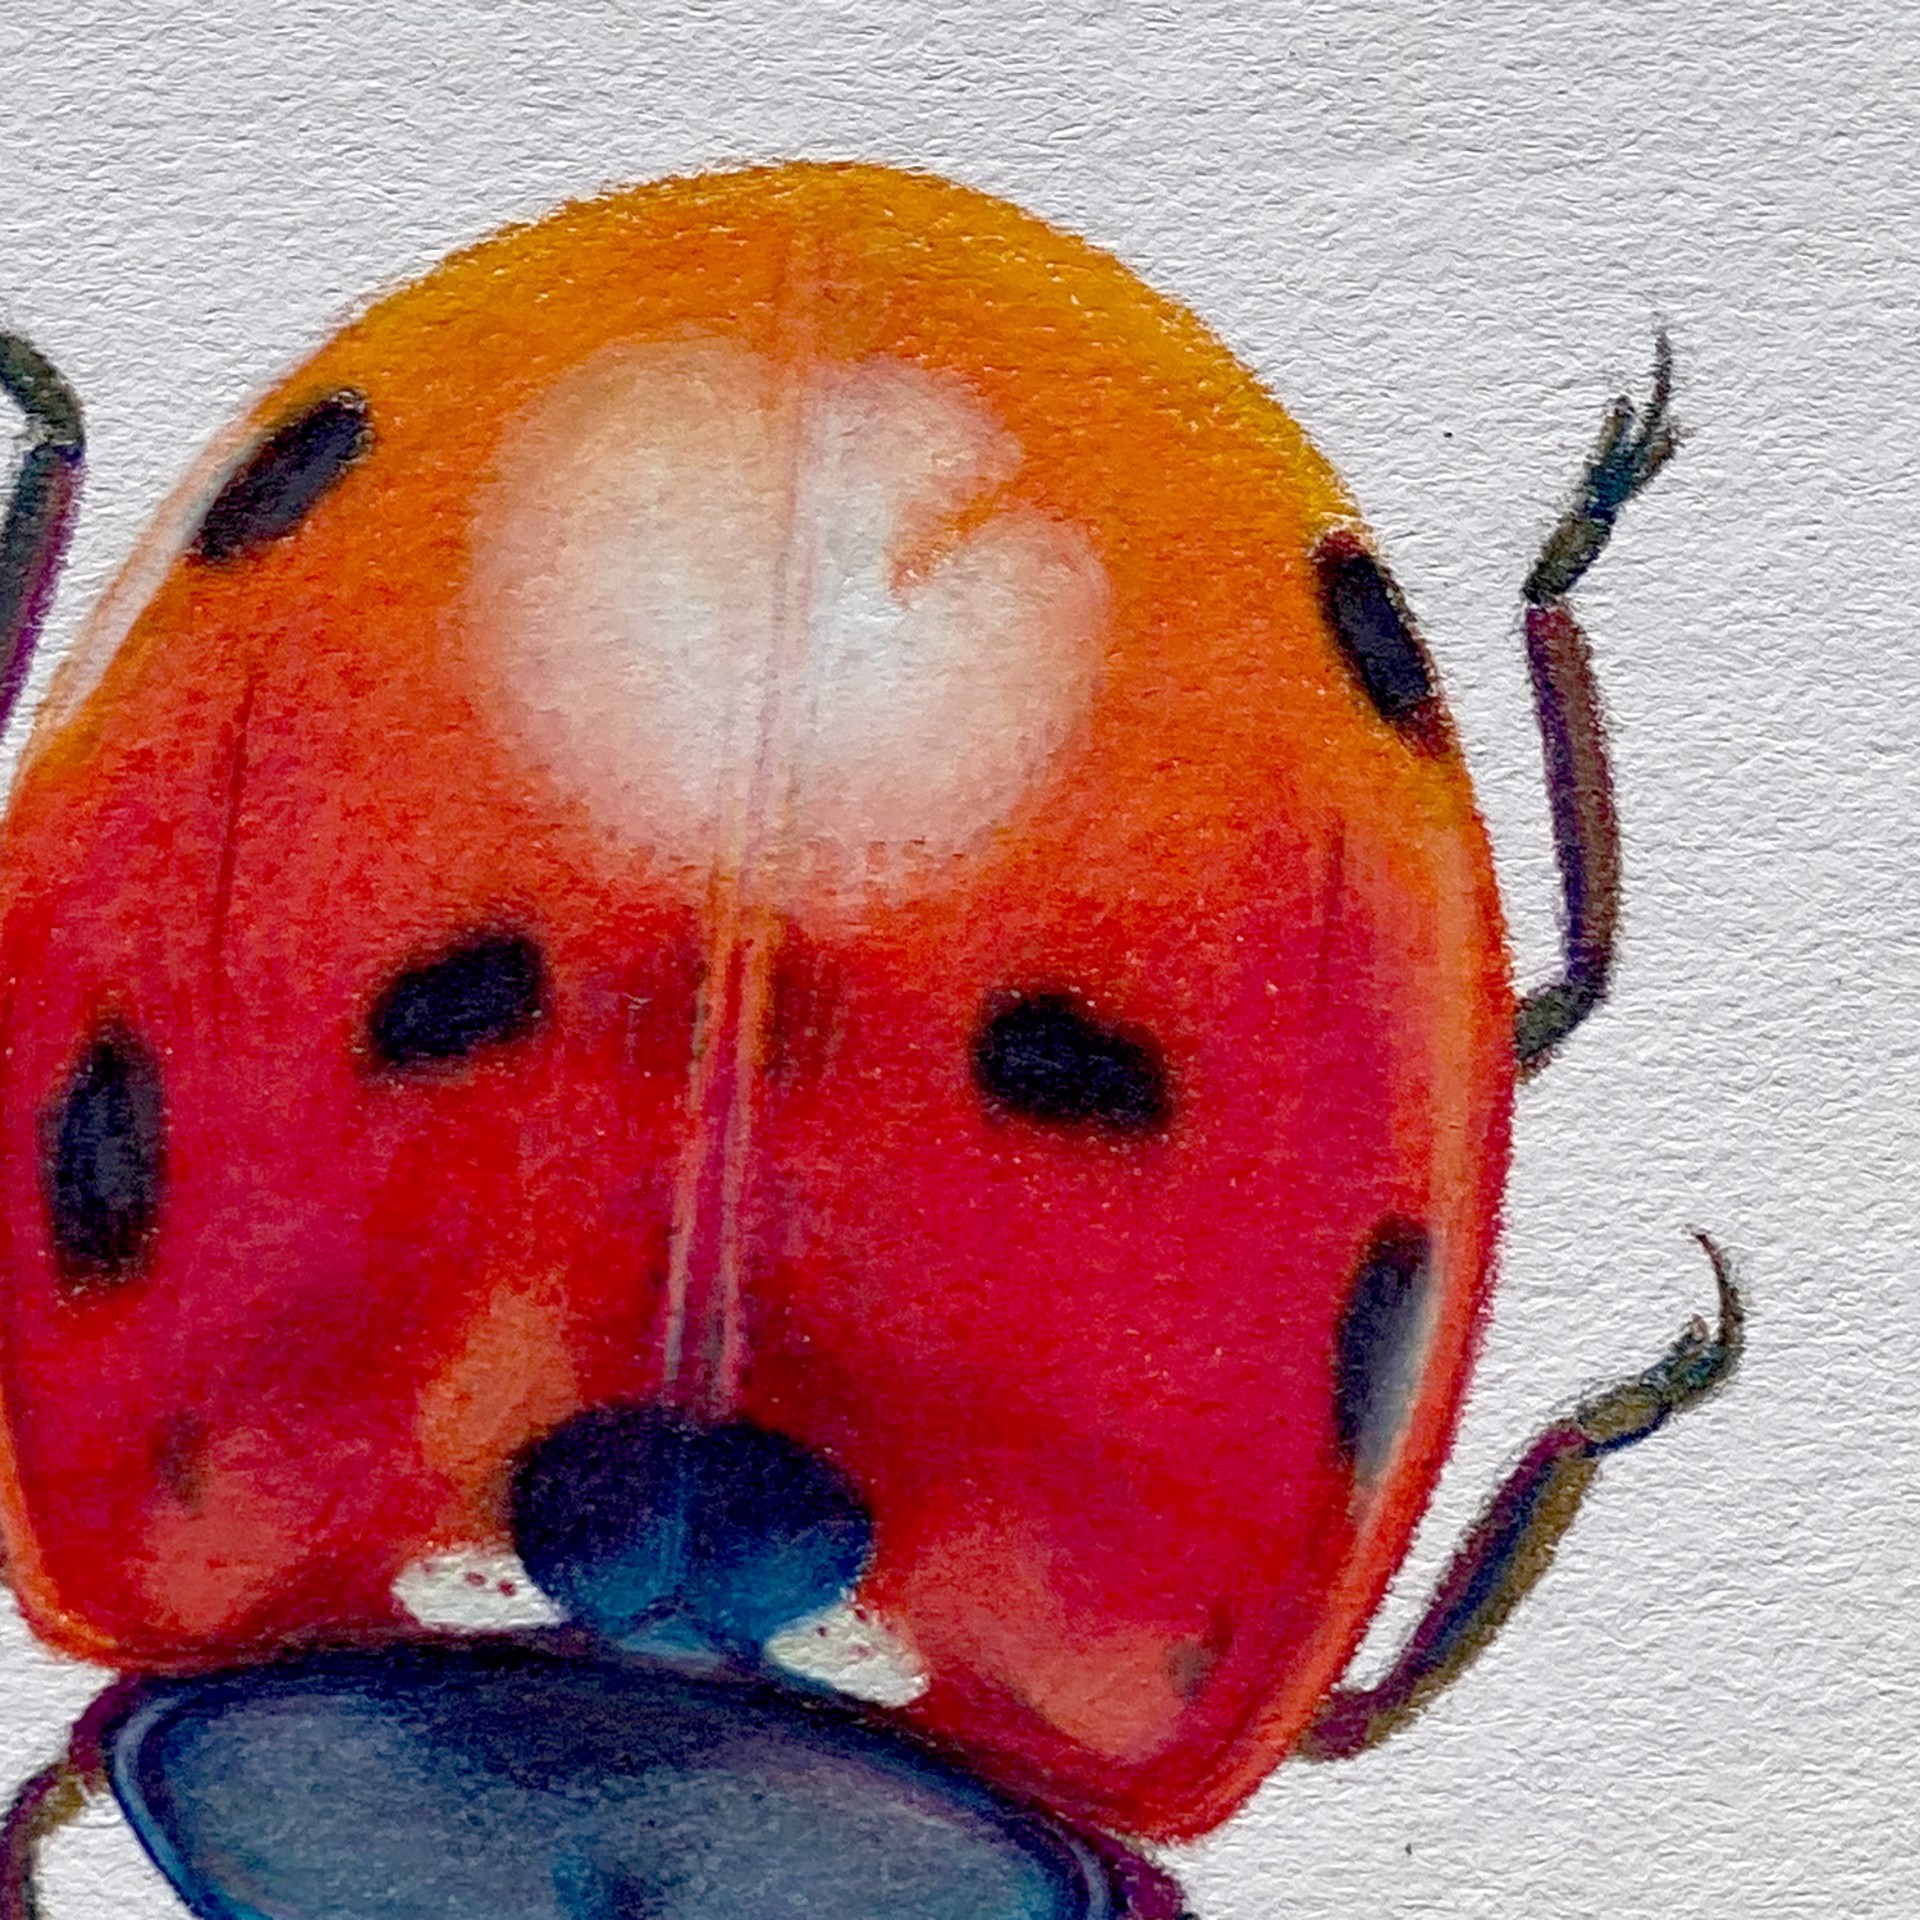 Coleoptera Chroma #7 by Hannah Hanlon